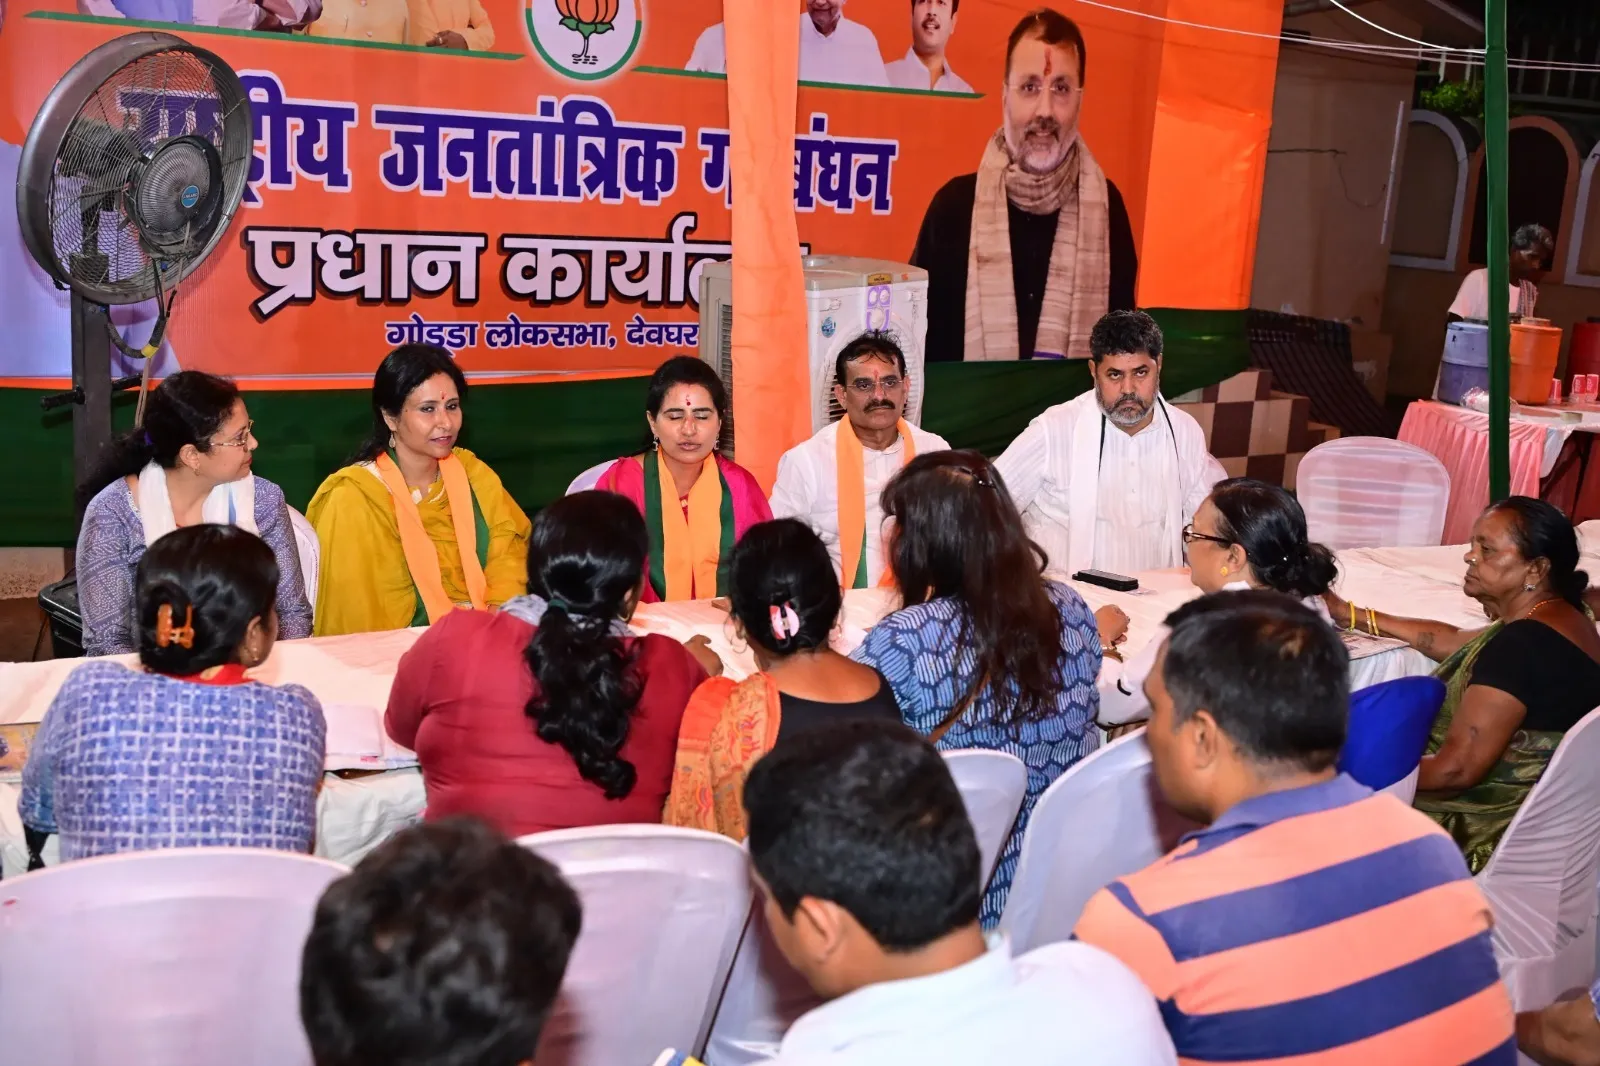 सांसद Vishnudutt Sharma ने झारखण्ड के गोड्डा लोकसभा क्षेत्र के देवघर में पार्टी प्रत्याशी के समर्थन में कार्यकर्ता बैठक को किया संबोधित